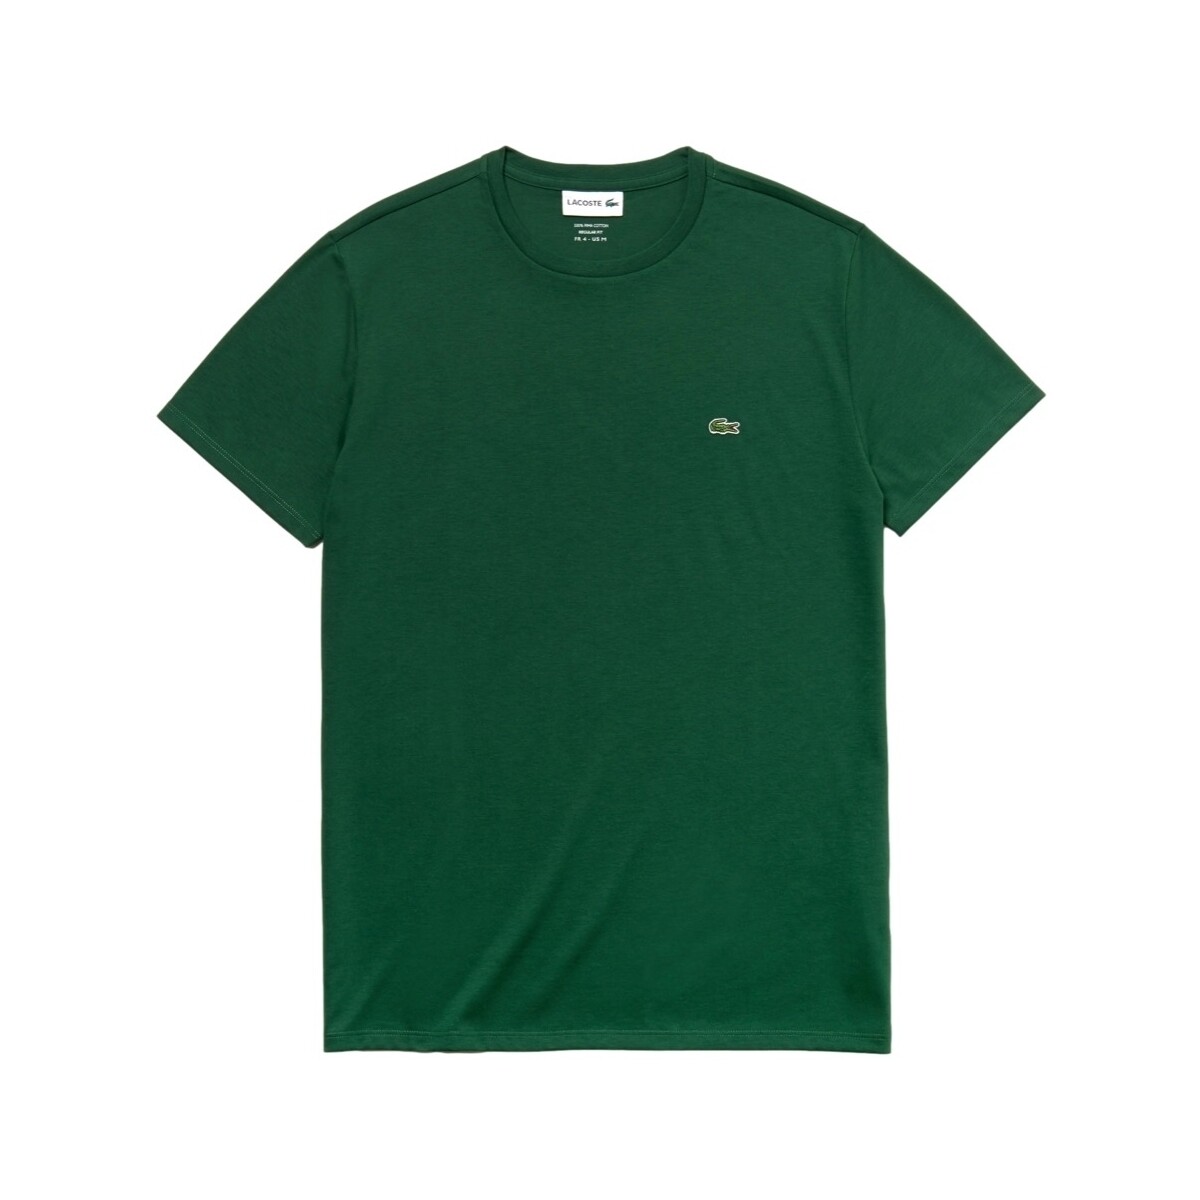 Ruhák Férfi Pólók / Galléros Pólók Lacoste Pima Cotton T-Shirt - Vert Zöld